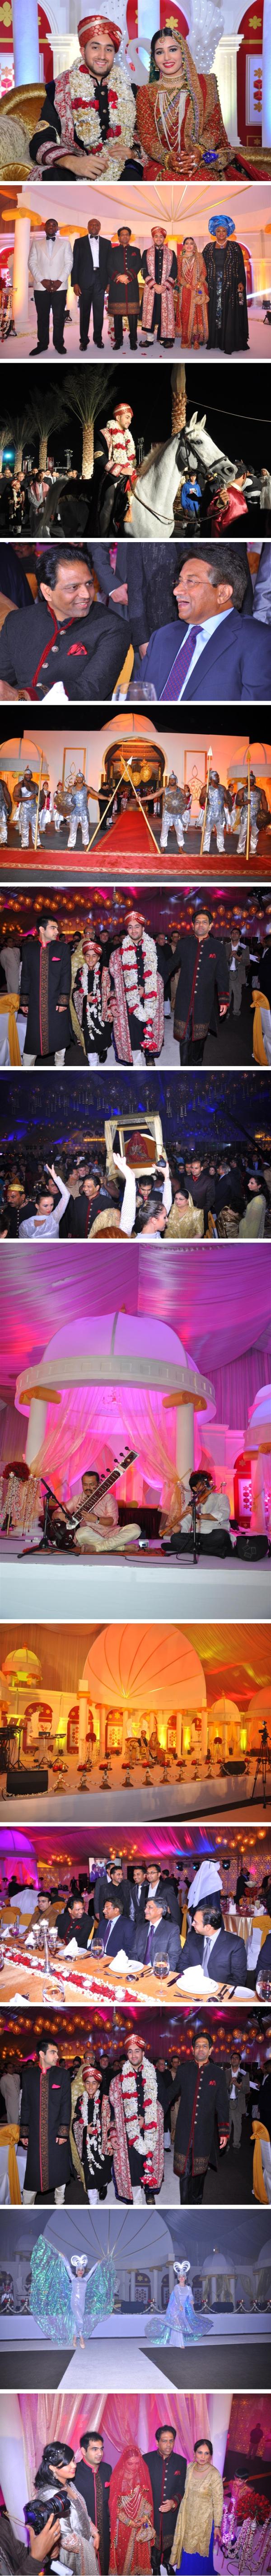 صور حفل زفاف الاميرة ندى الملك في دبي 2013